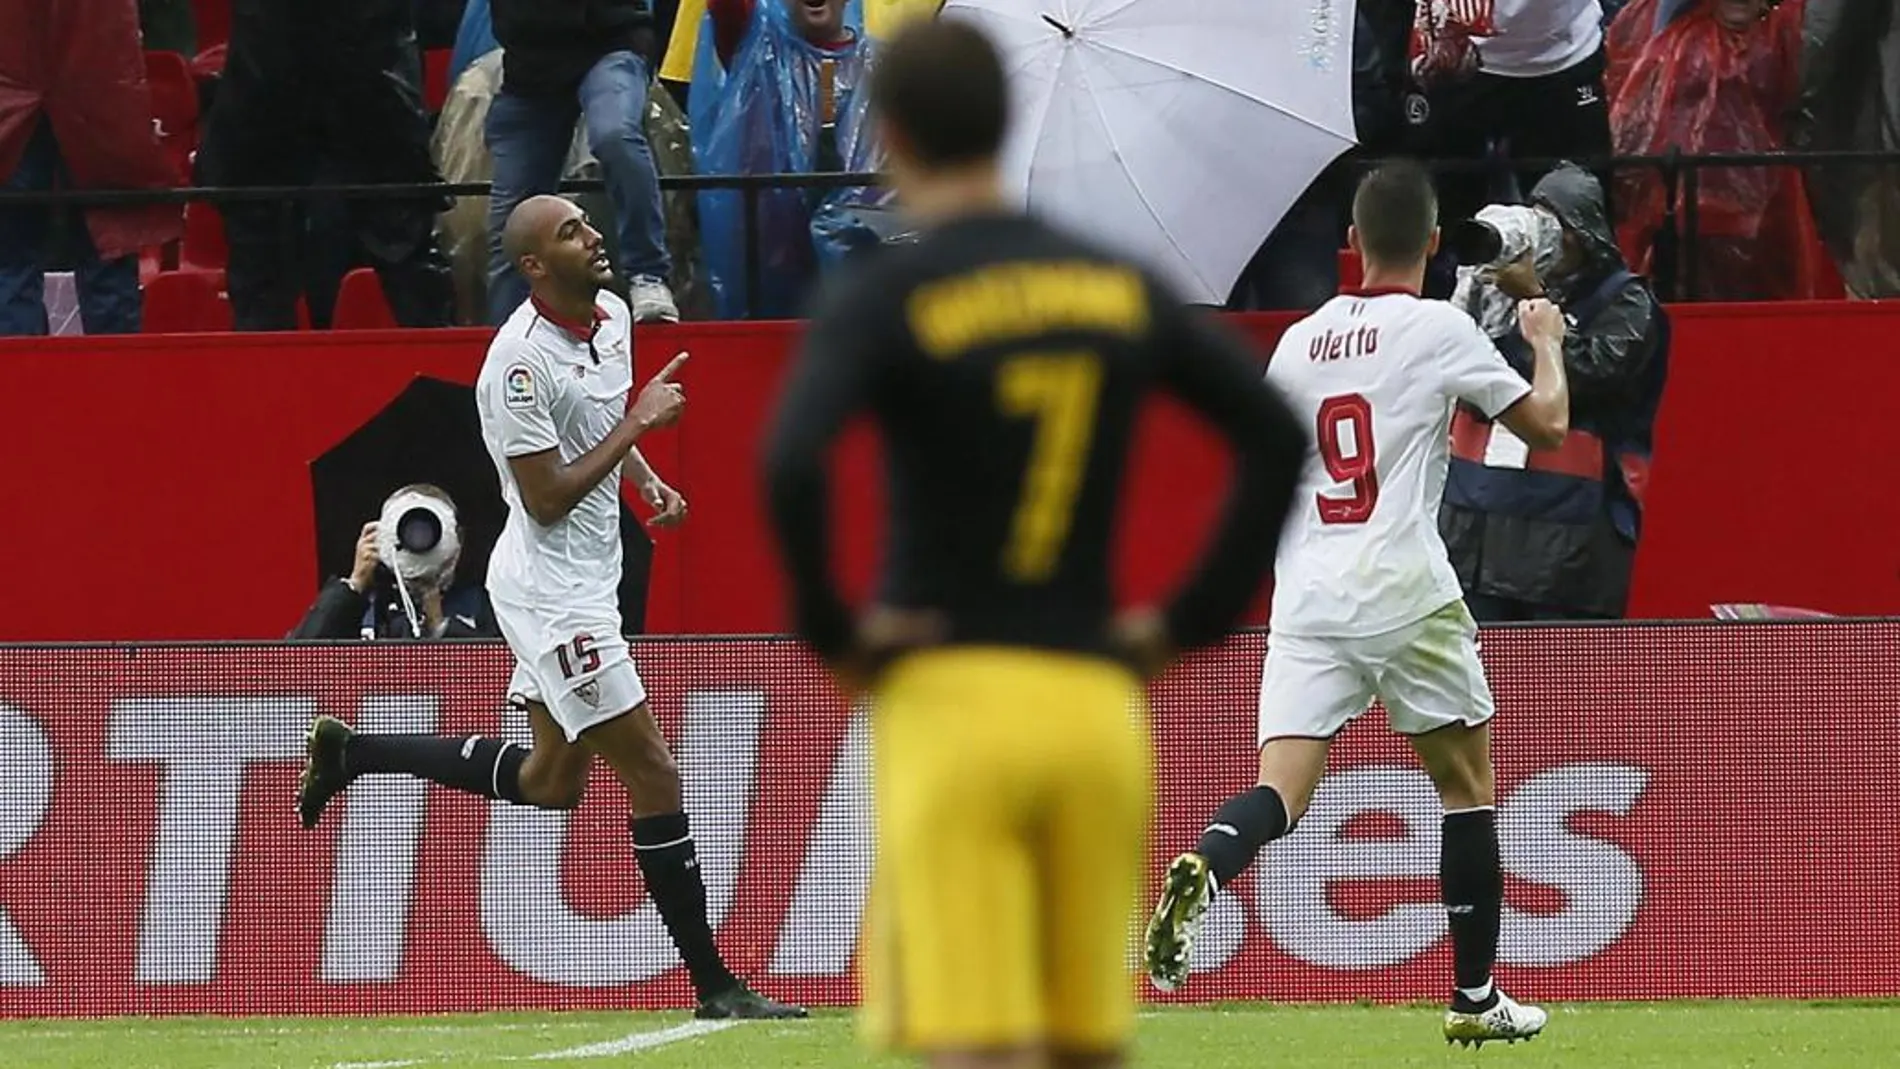 El centrocampista francés del Sevilla Steven N'Zonzi celebra el gol marcado ante el Atlético de Madrid